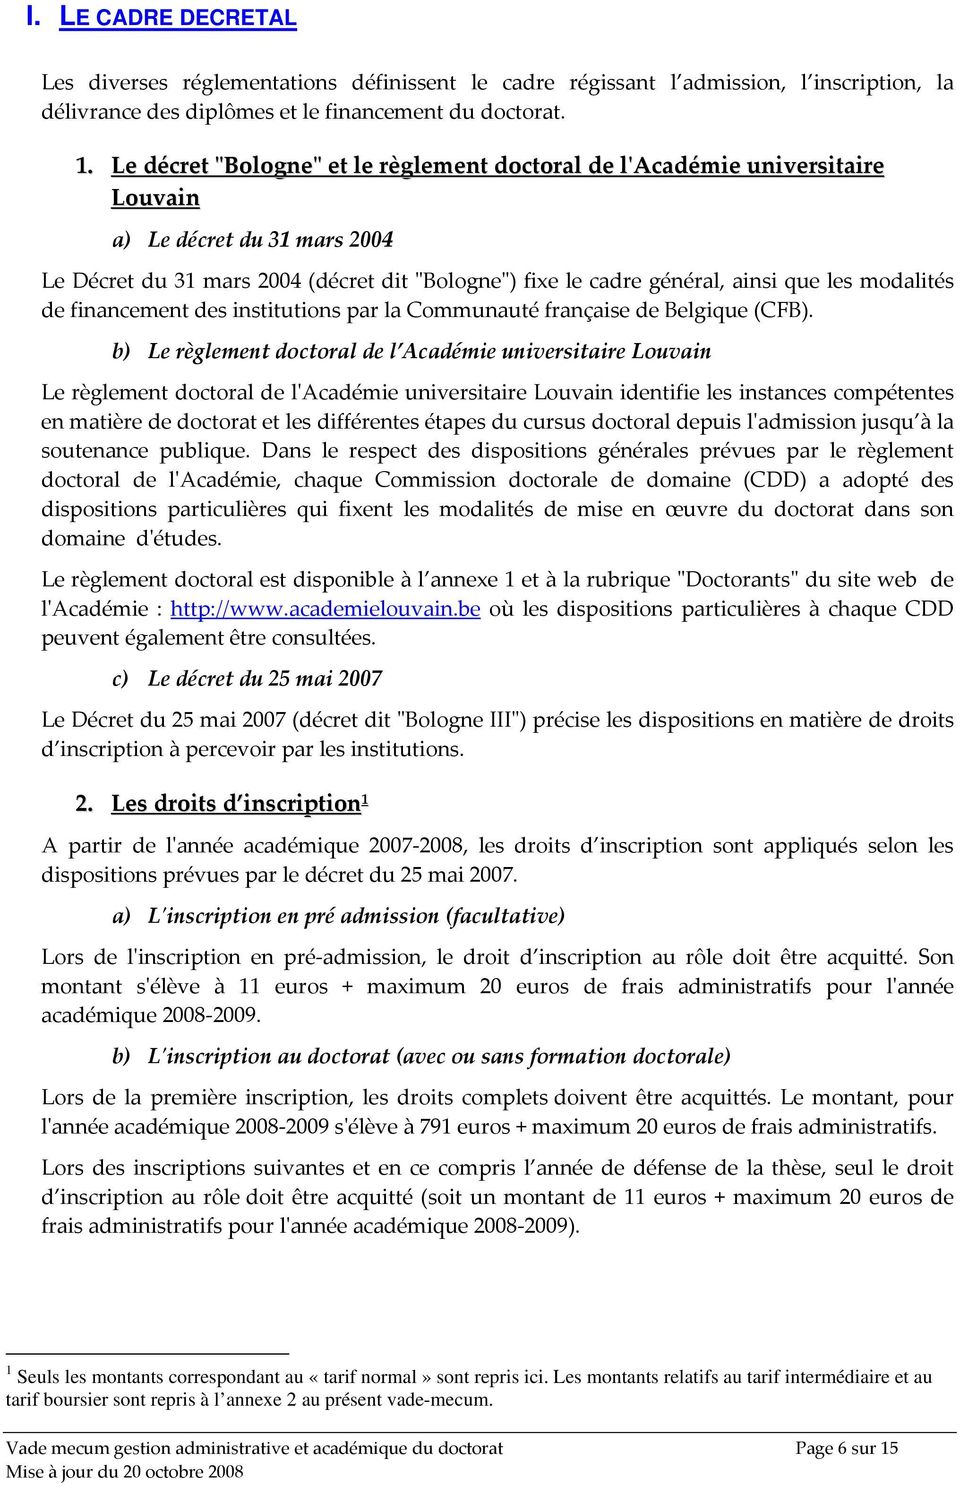 modalités de financement des institutions par la Communauté française de Belgique (CFB).